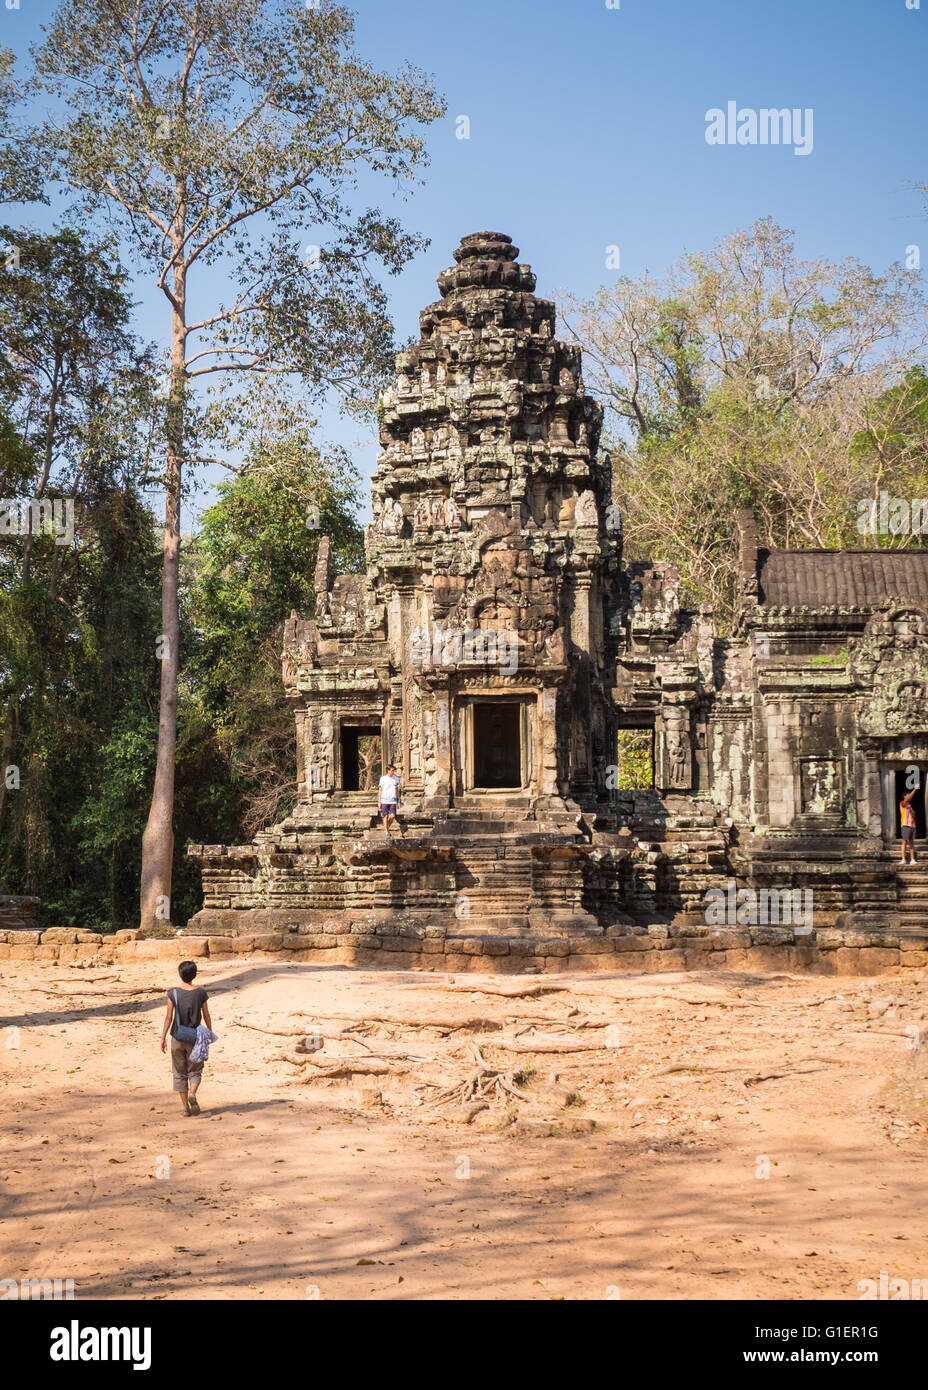 Un turista en Chau decir templo en la zona de Siem Reap, Camboya Foto de stock